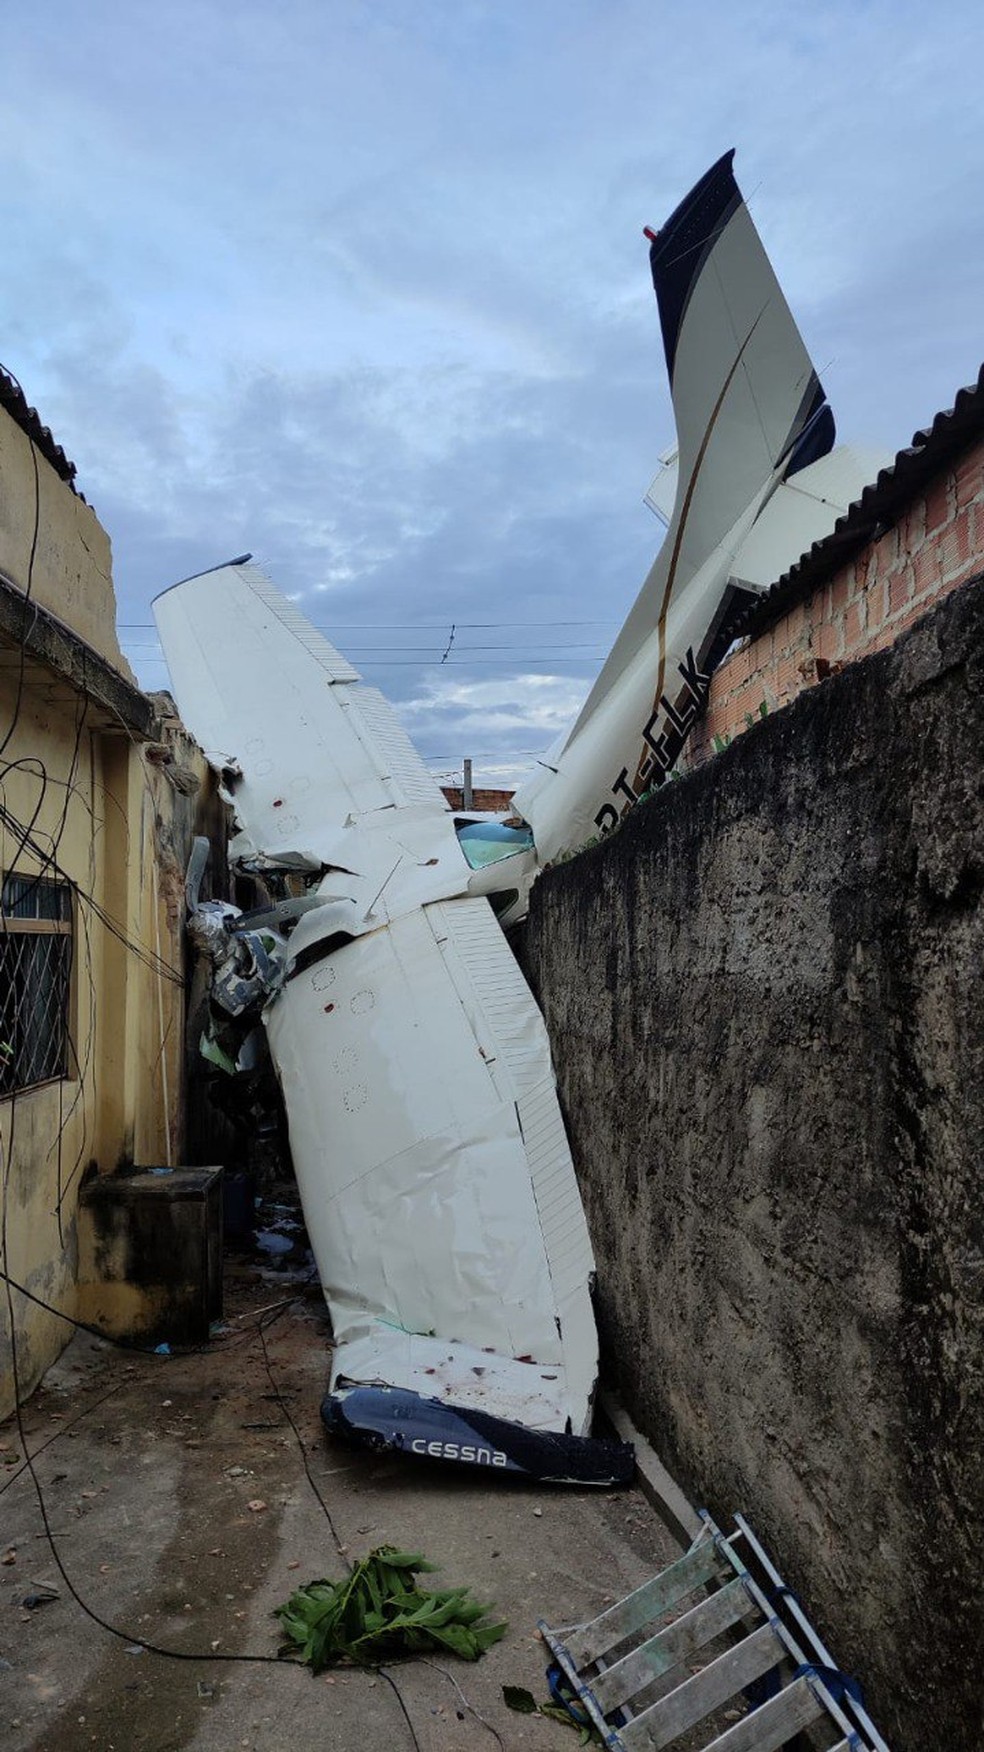 Piloto morre após queda de avião em BH. A filha, que viajava com ele, segue internada em estado grave. — Foto: CBMMG